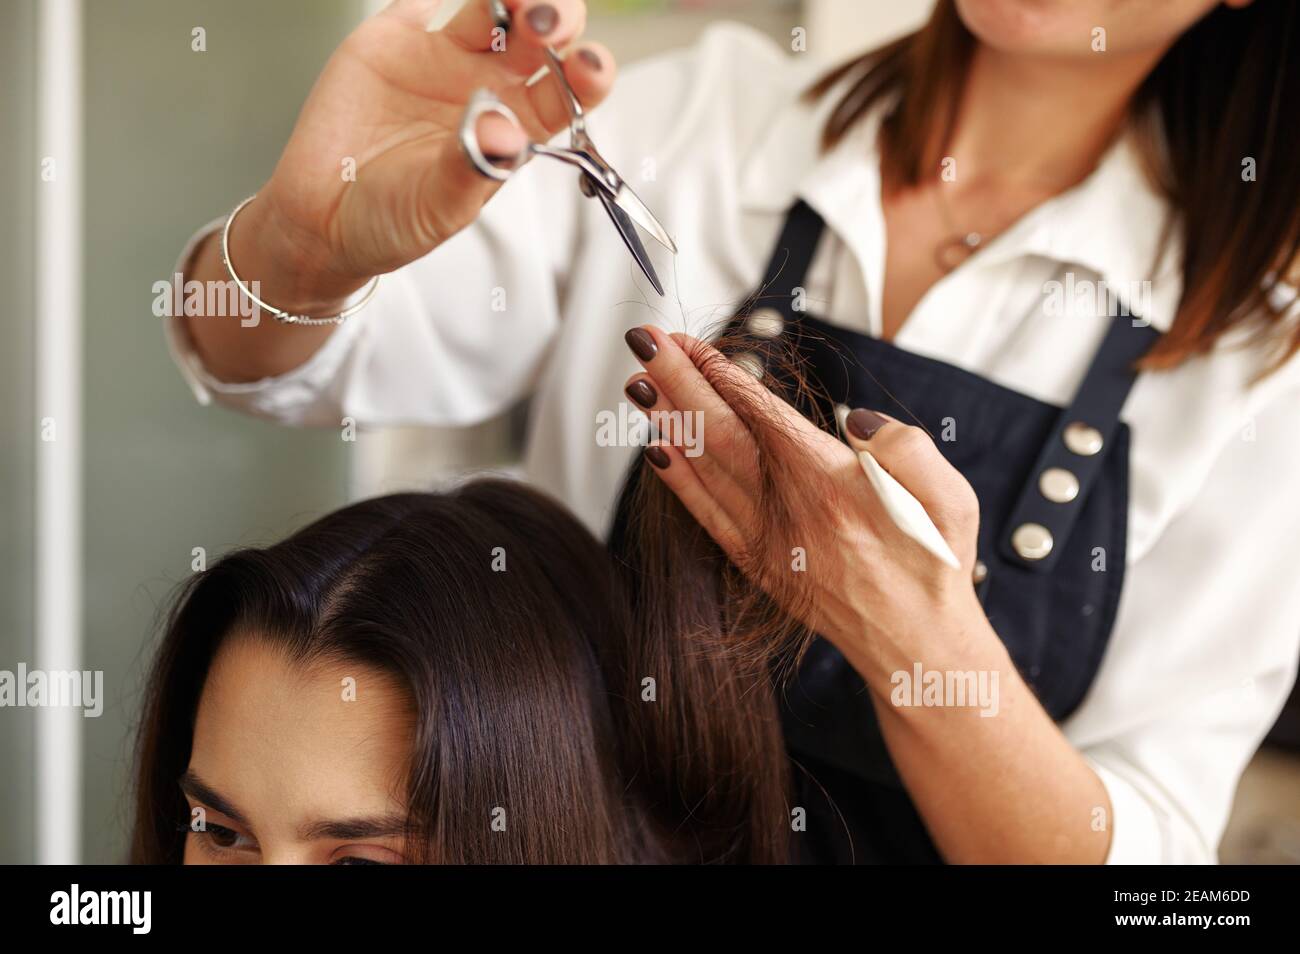 Coiffeur avec ciseaux coupe les cheveux de la femme Banque D'Images